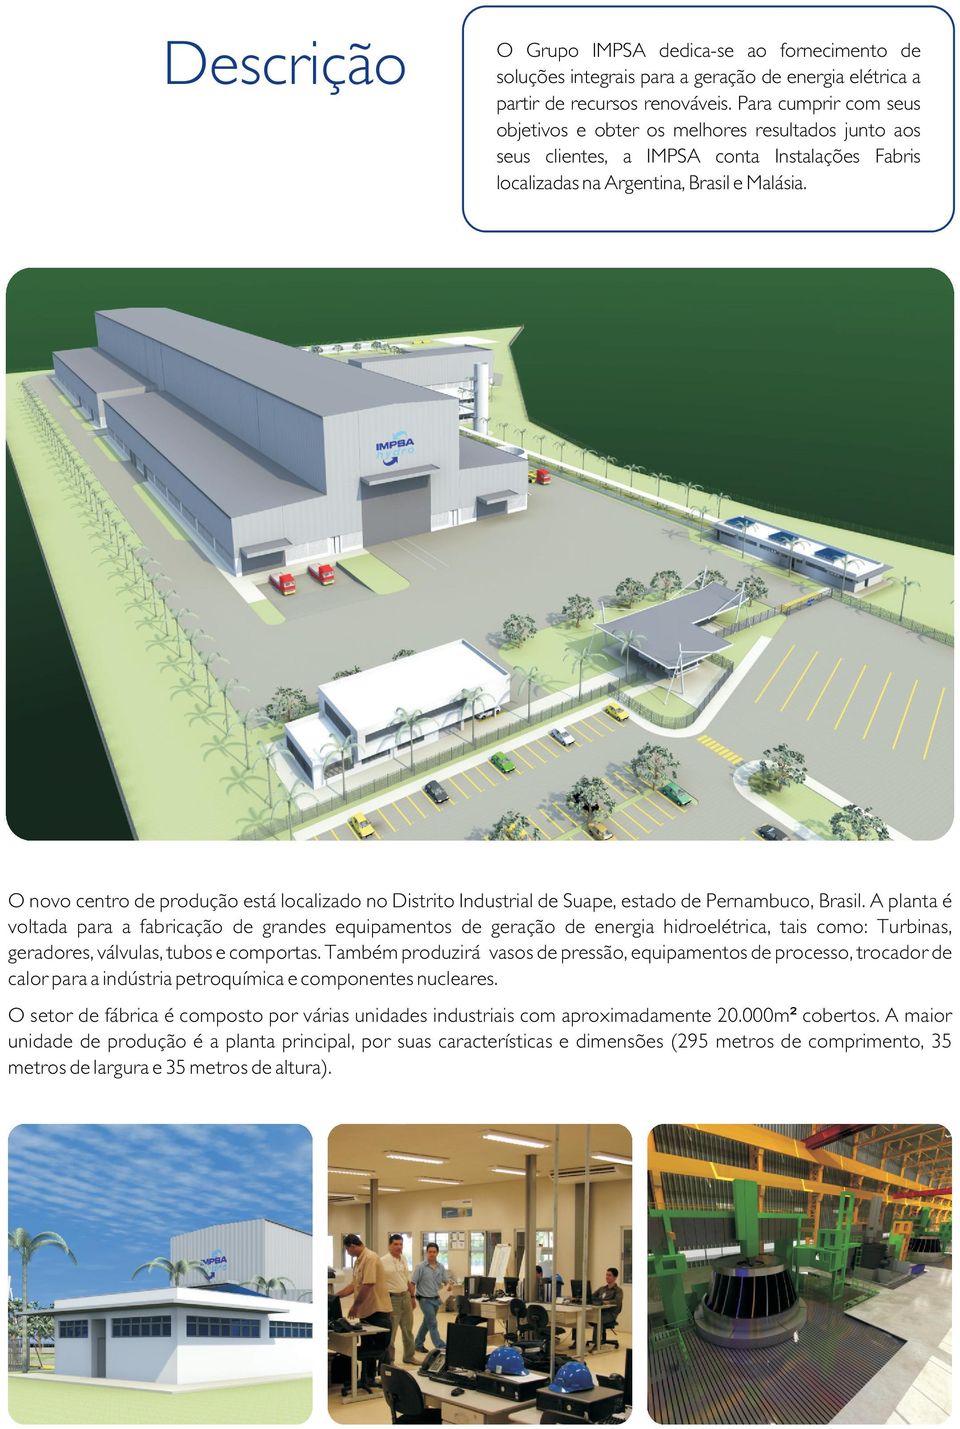 O novo centro de produção está localizado no Distrito Industrial de Suape, estado de Pernambuco, Brasil.